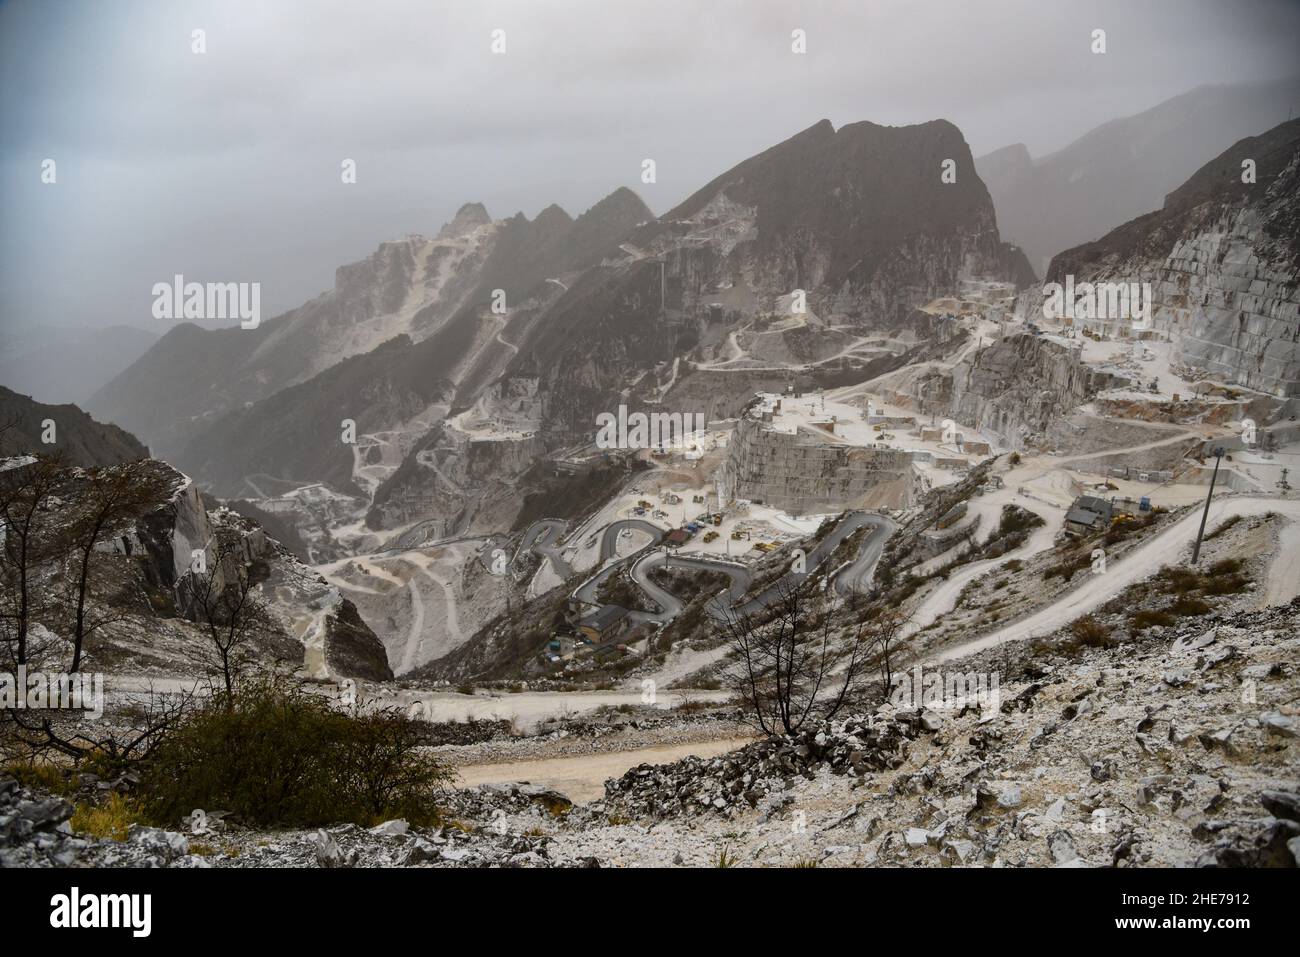 Escenario invernale delle cave di marmo sulle Alpi Apuane Foto de stock